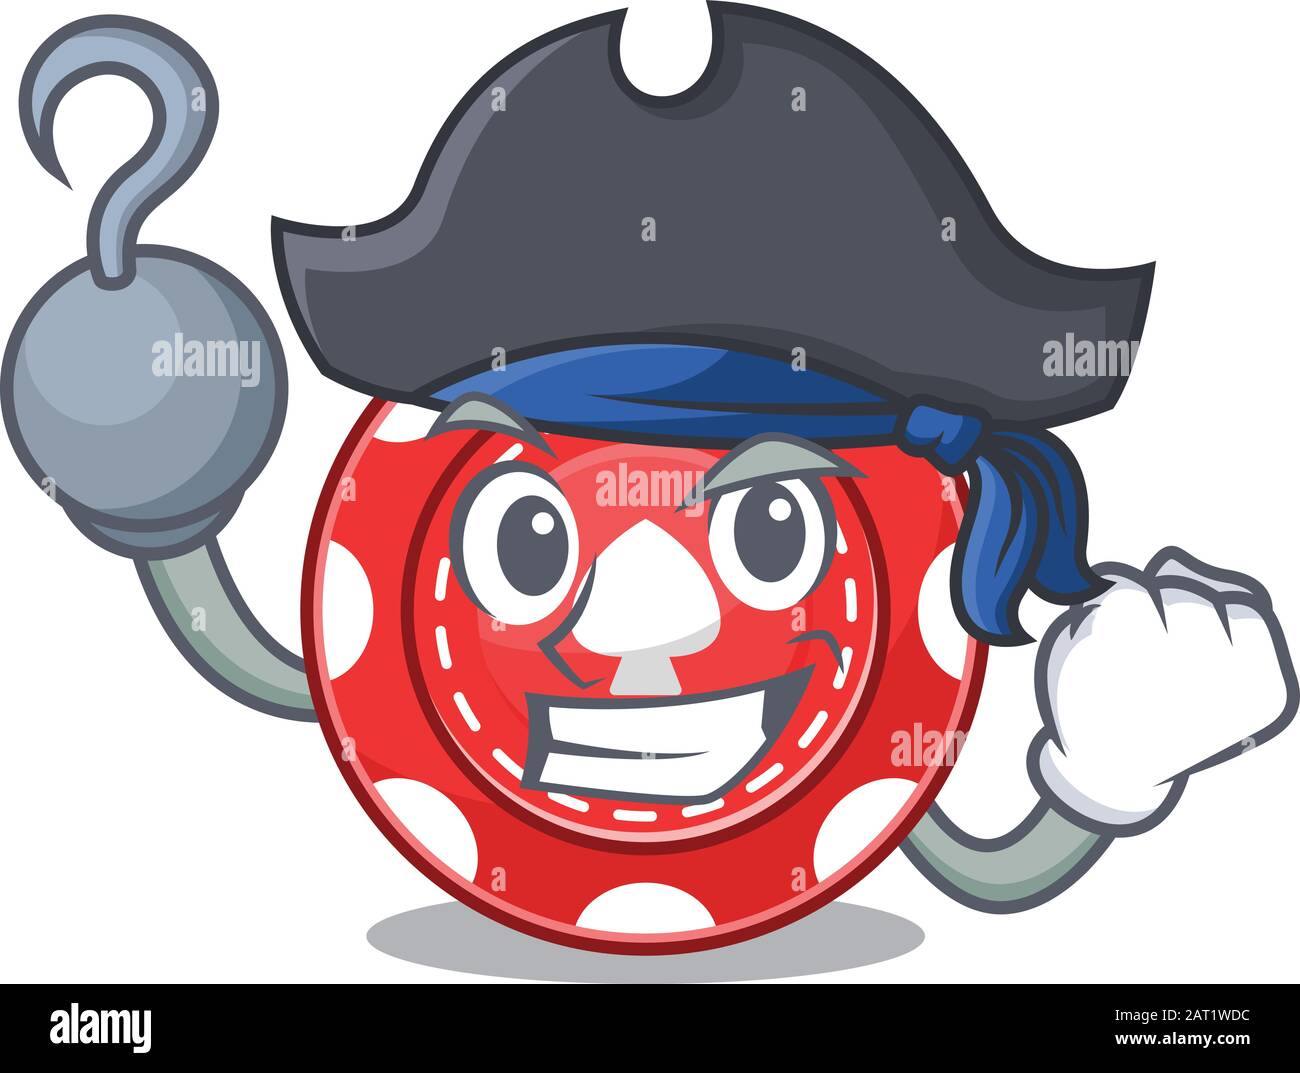 Coole und lustige Spielchips Cartoon-Stil mit Hut Stock Vektor